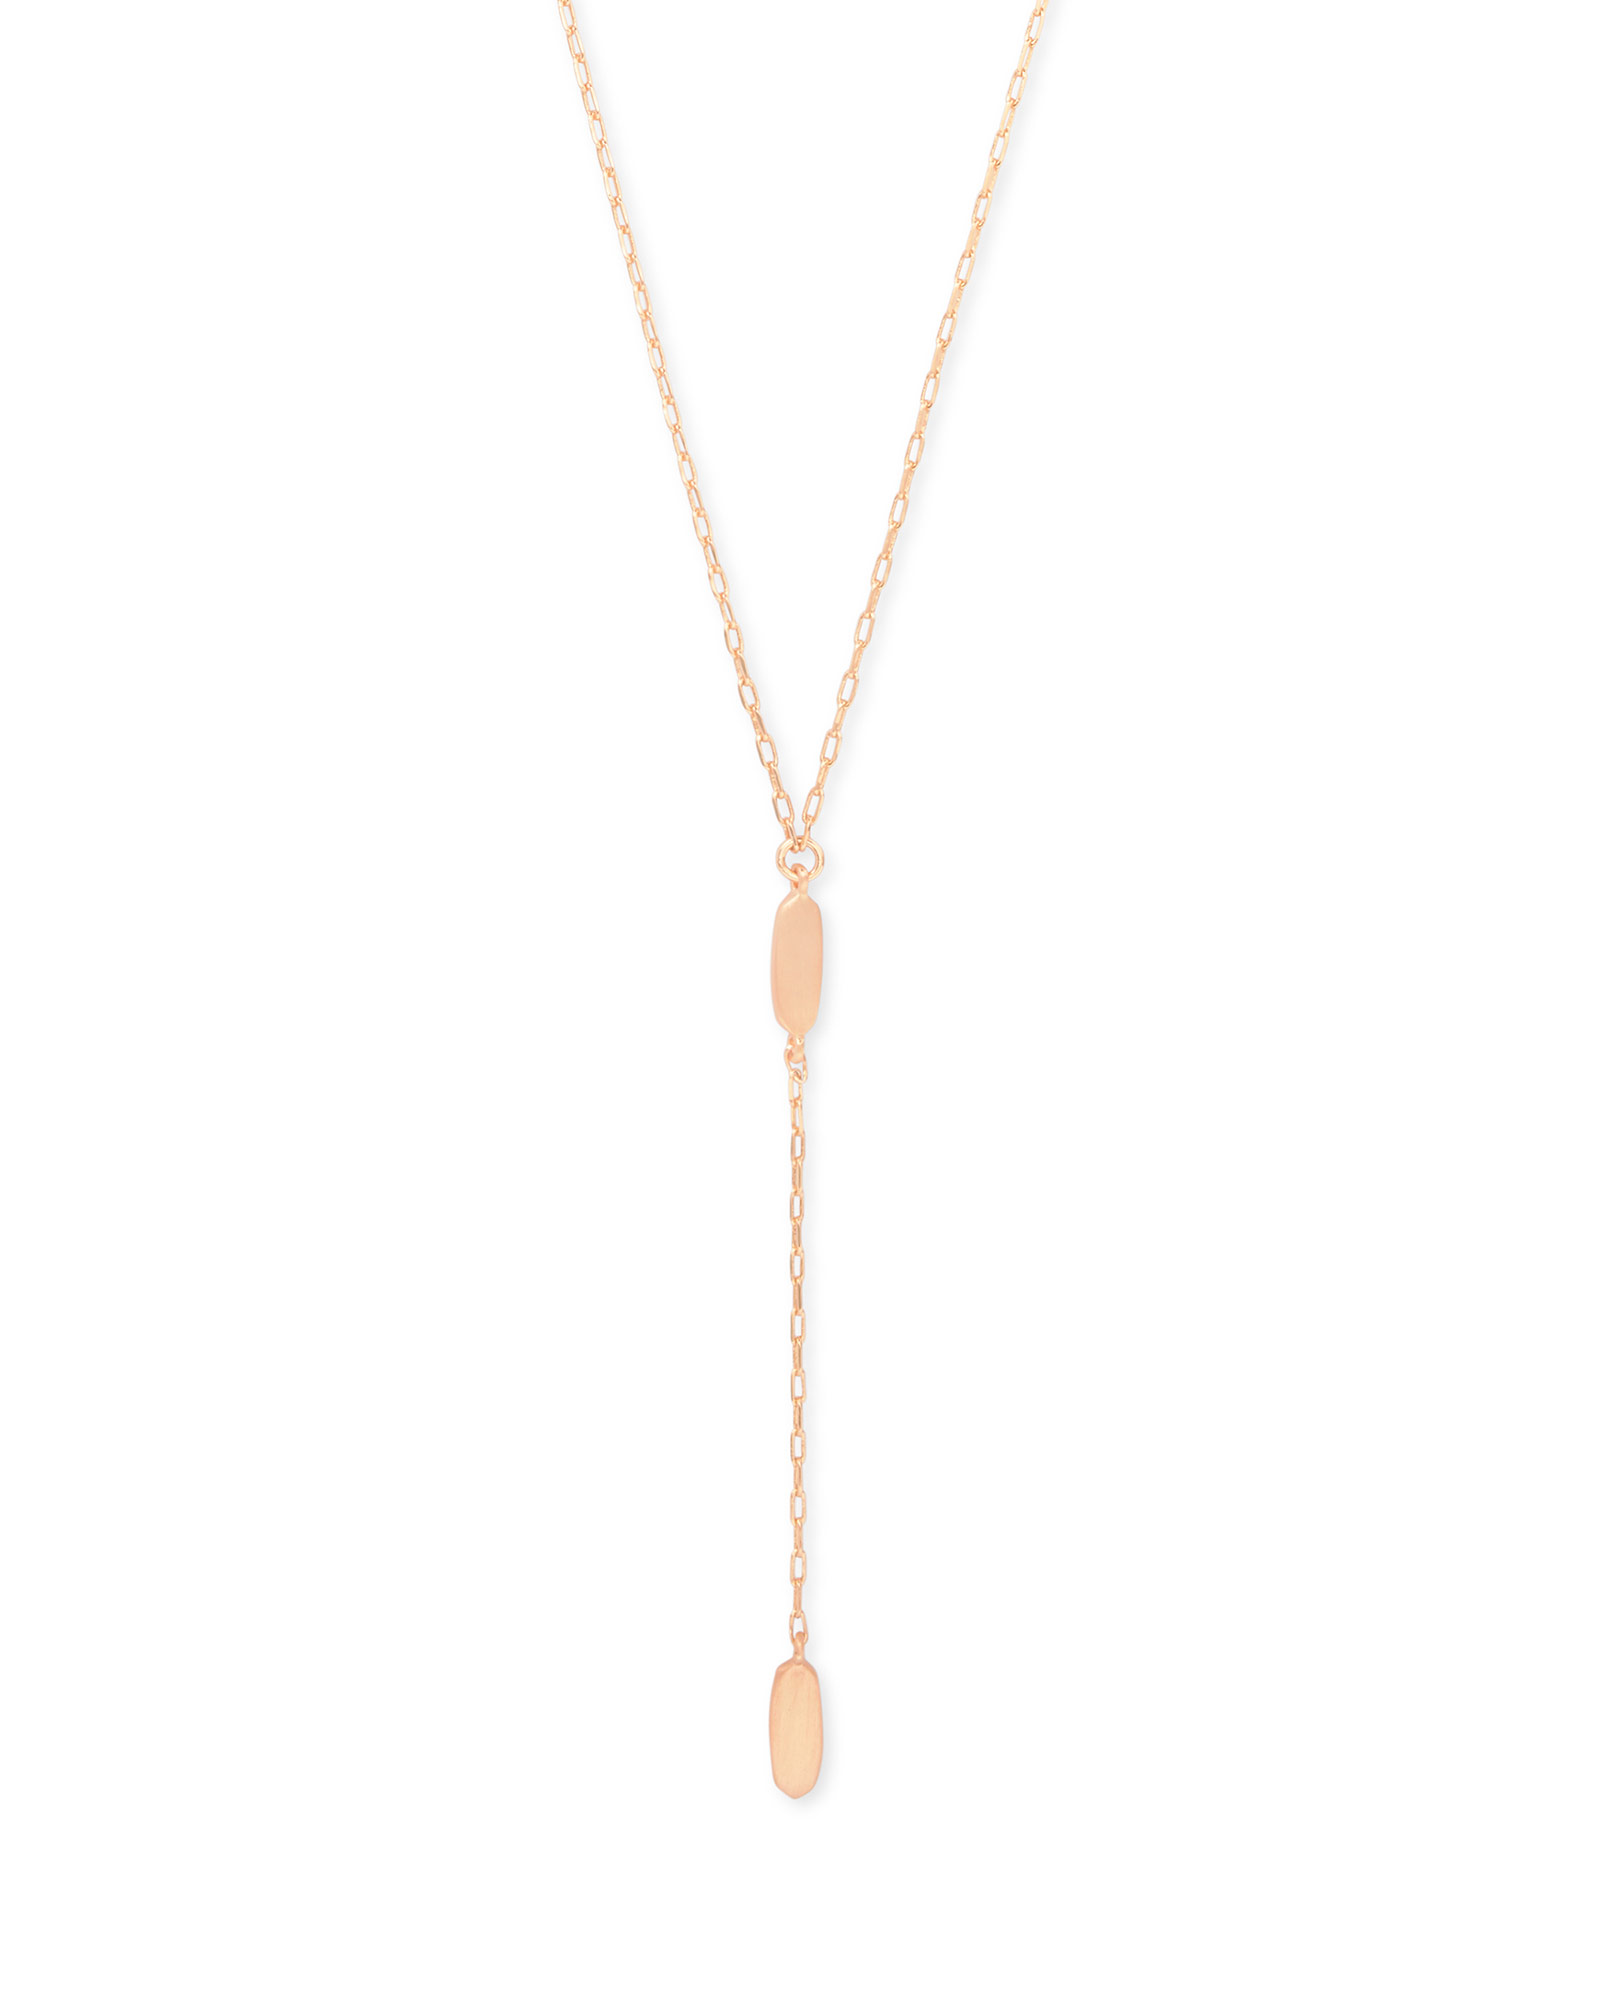 Fern Y Necklace in Rose Gold | Kendra Scott